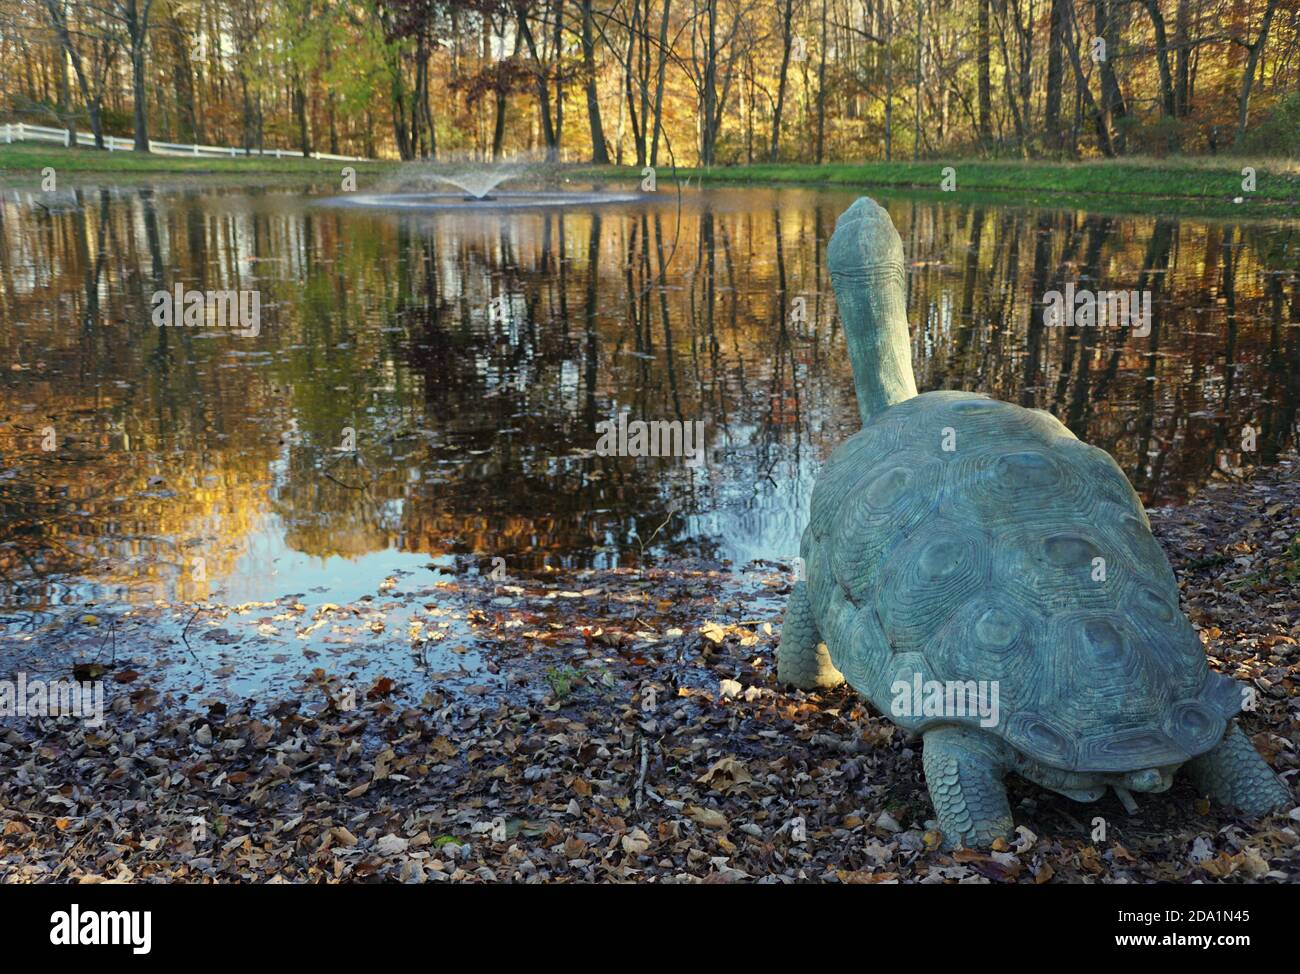 Une grande tortue près d'un étang près de Carousel Park, Pike Creek, Delaware, U.S.A Banque D'Images